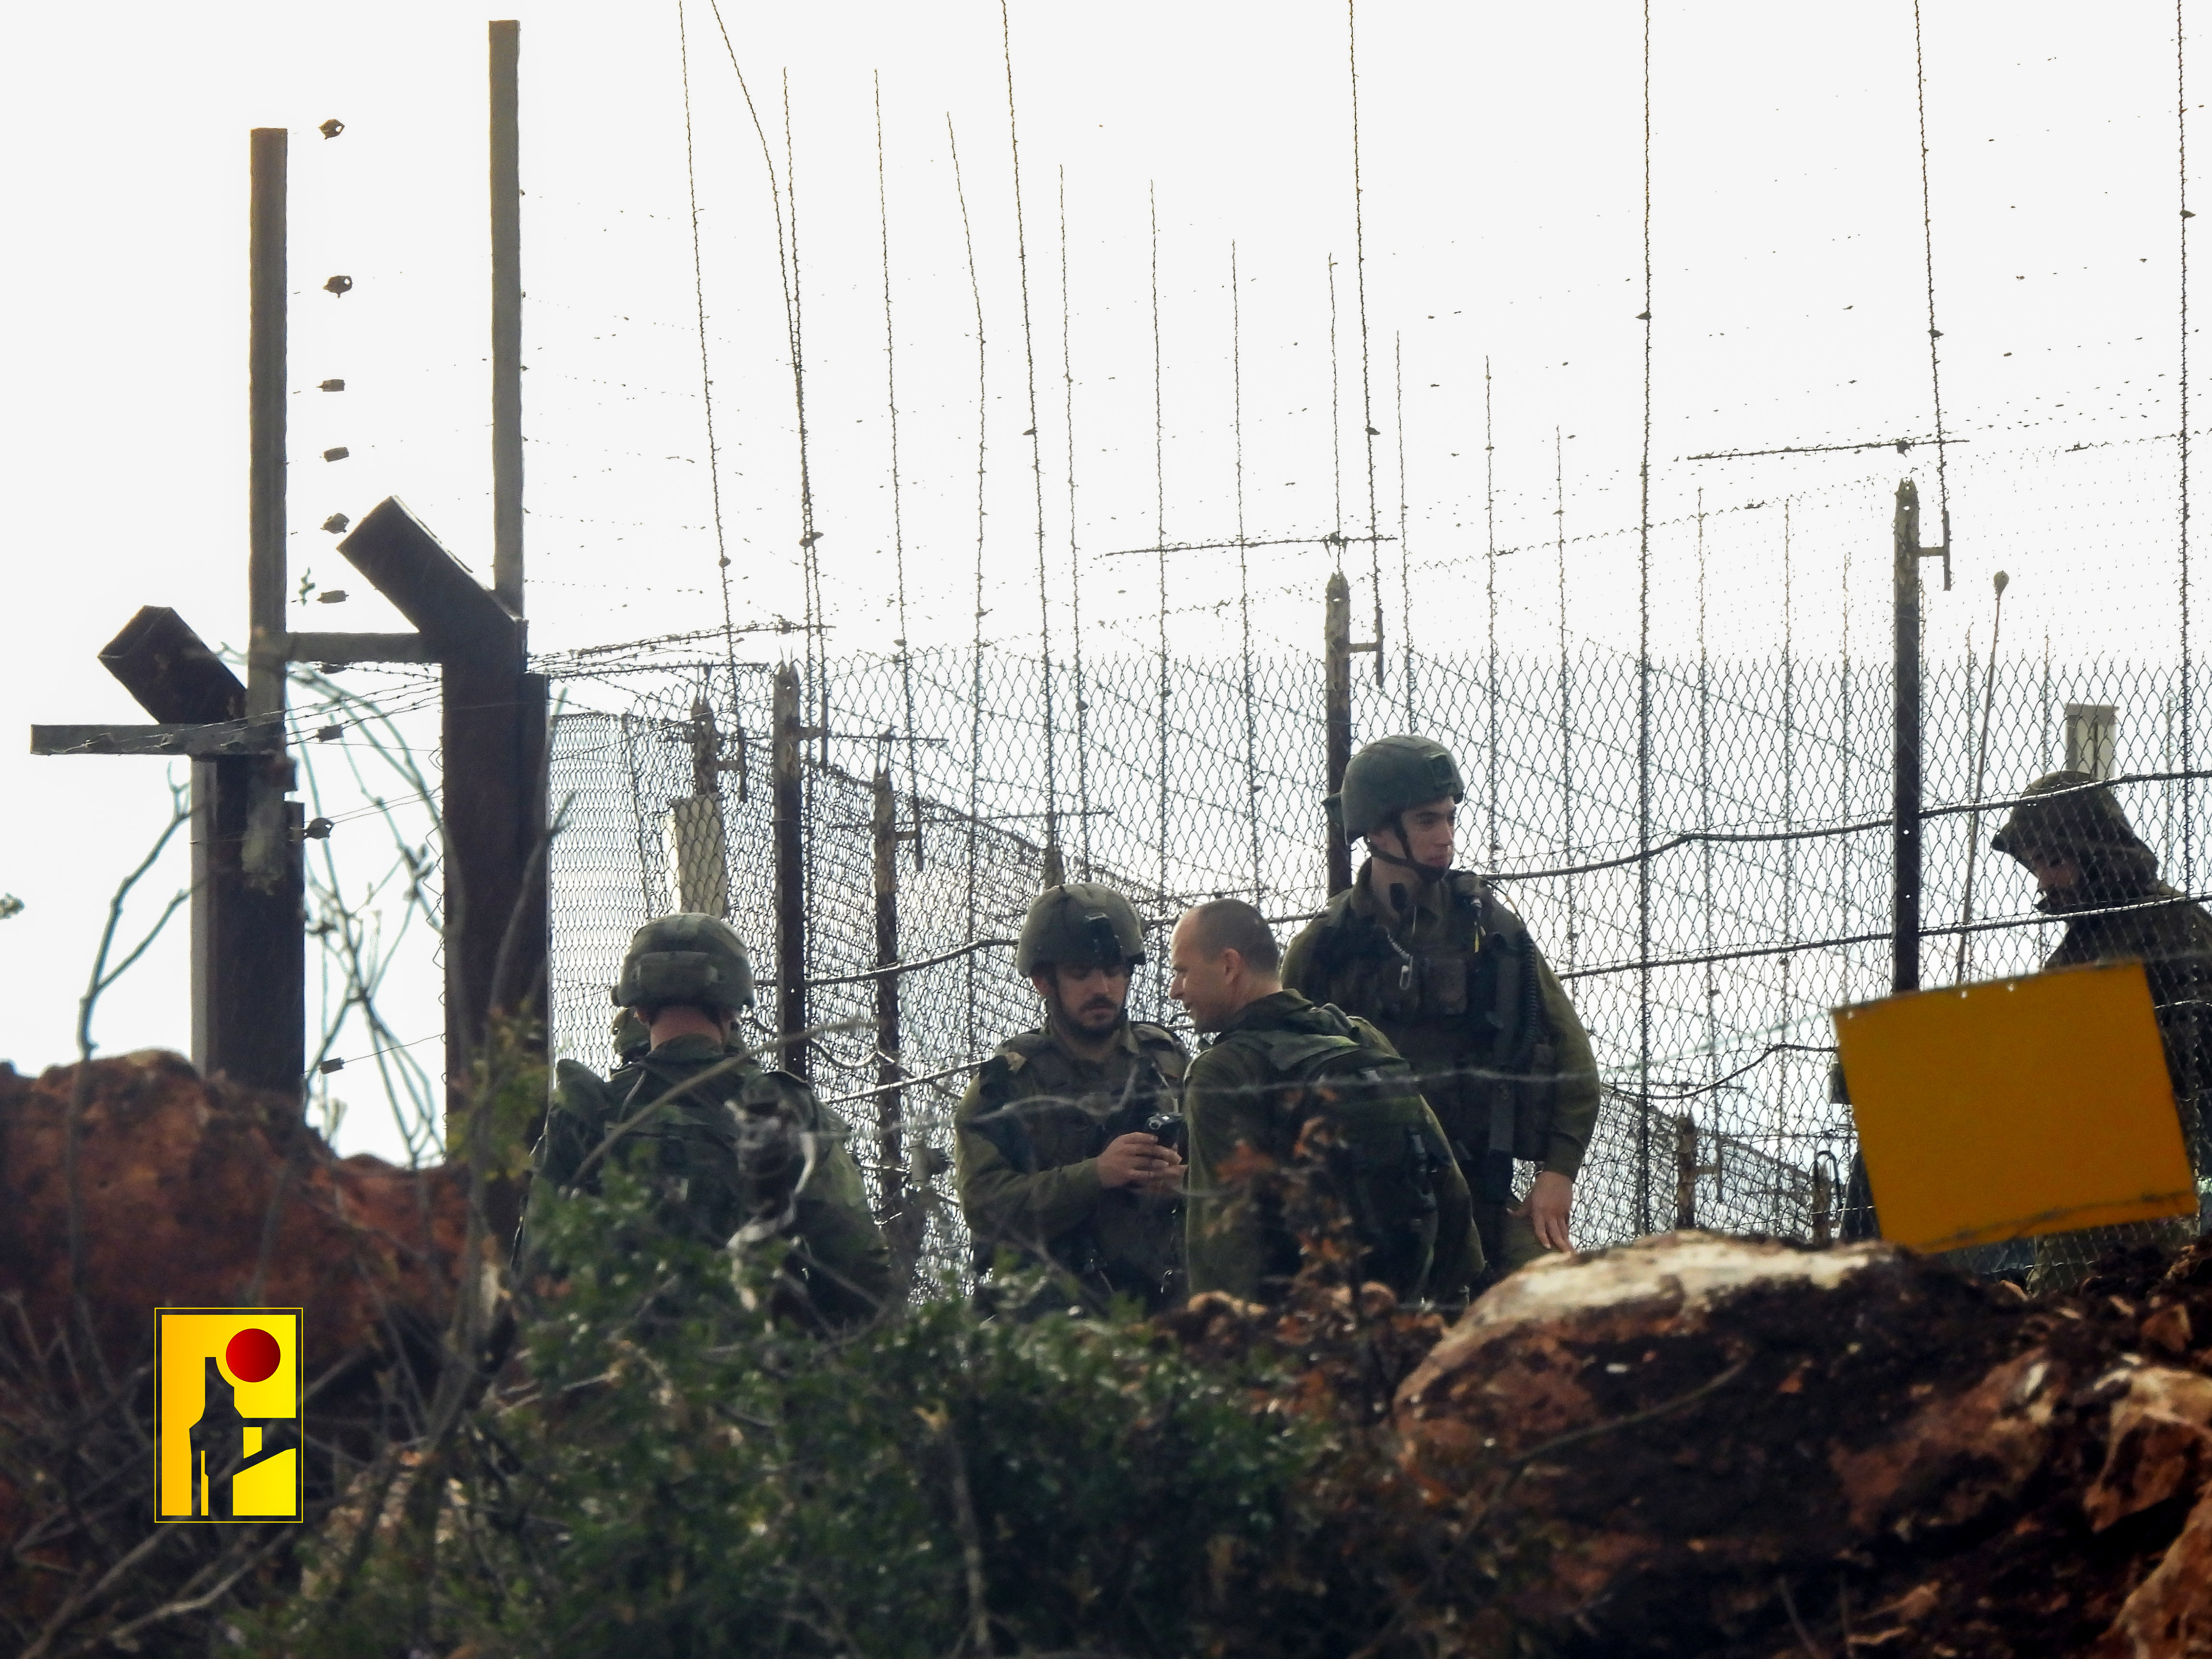 الإعلام الحربي يبث مشاهد إنفجار لغم أرضي بدورية صهيونية عند الحدود اللبنانية